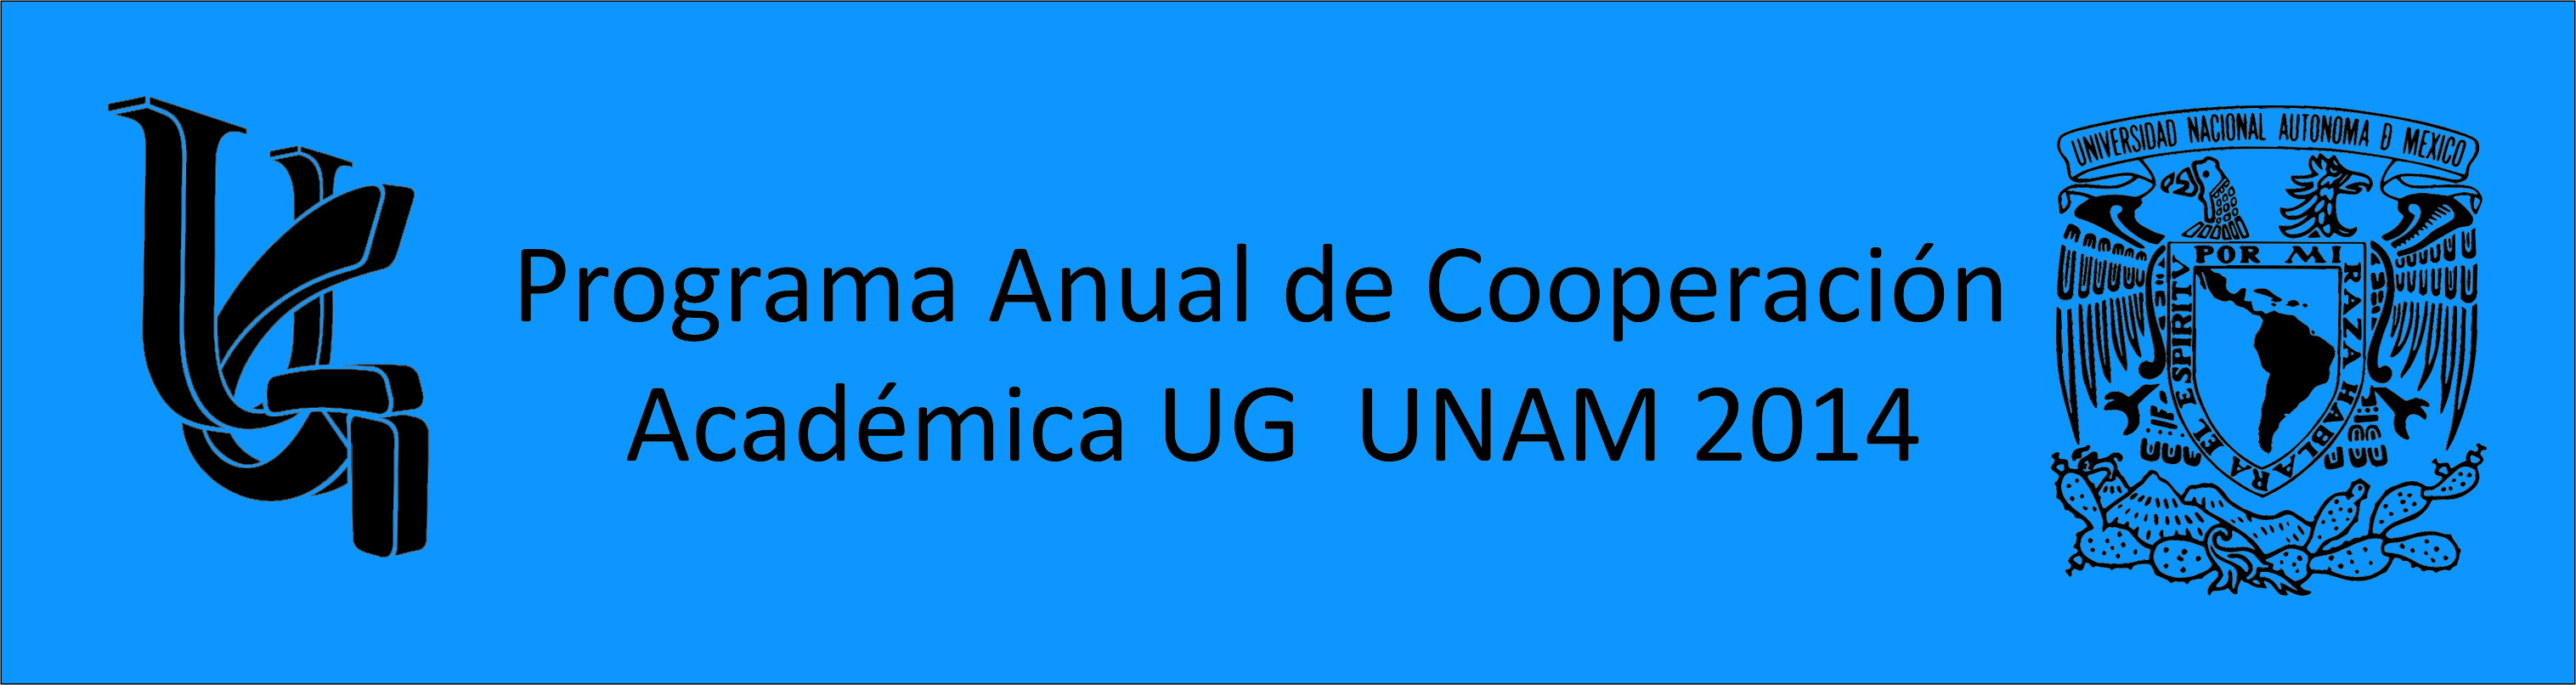 UG-UNAM